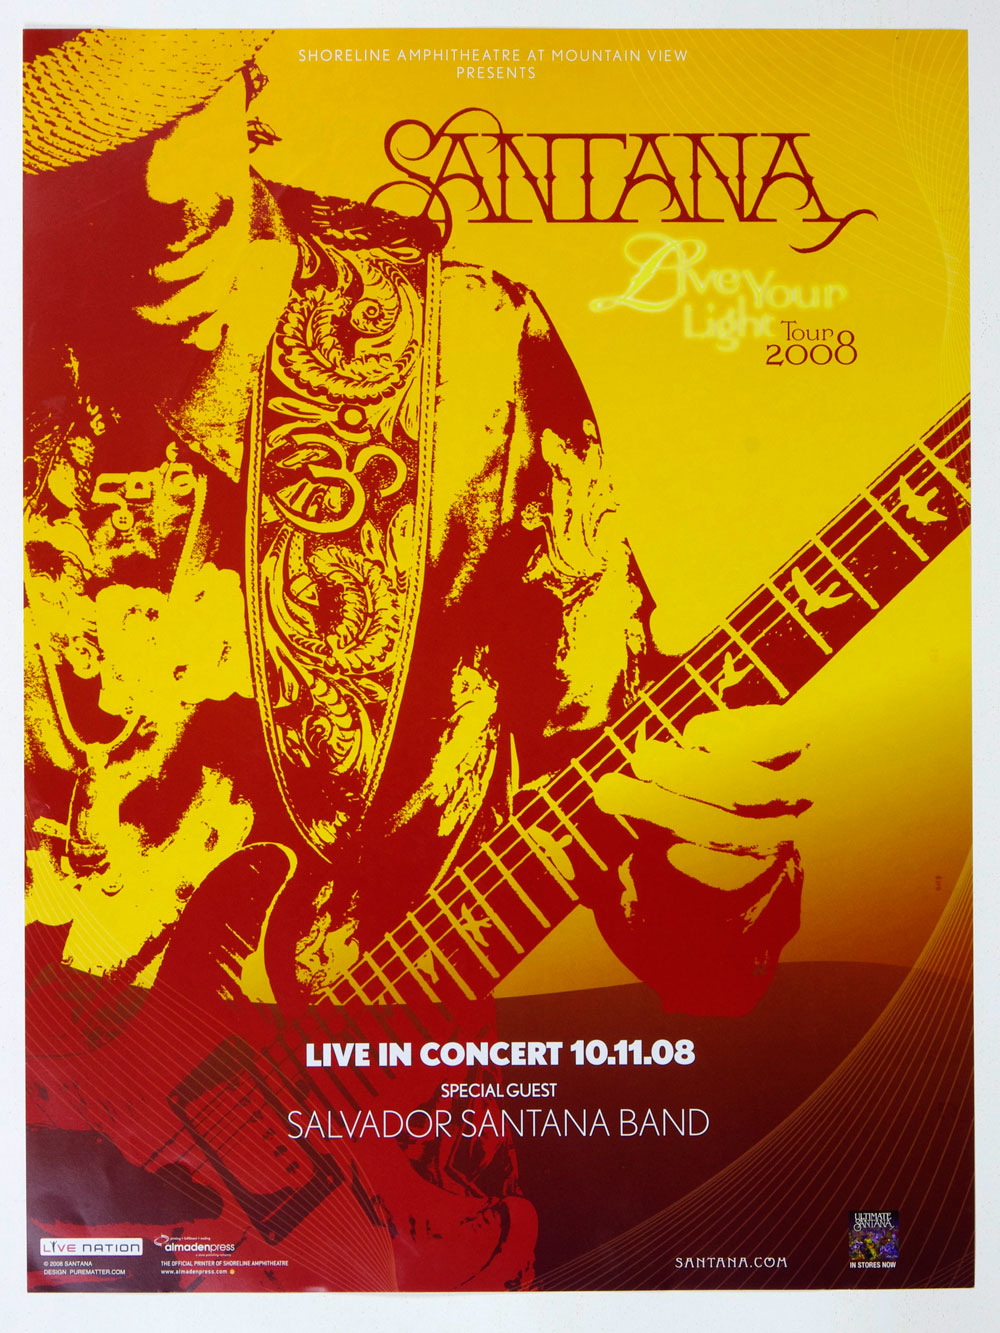 Santana Poster Live Your Light Tour 2008 Oct 11 Shoreline Amphitheatre